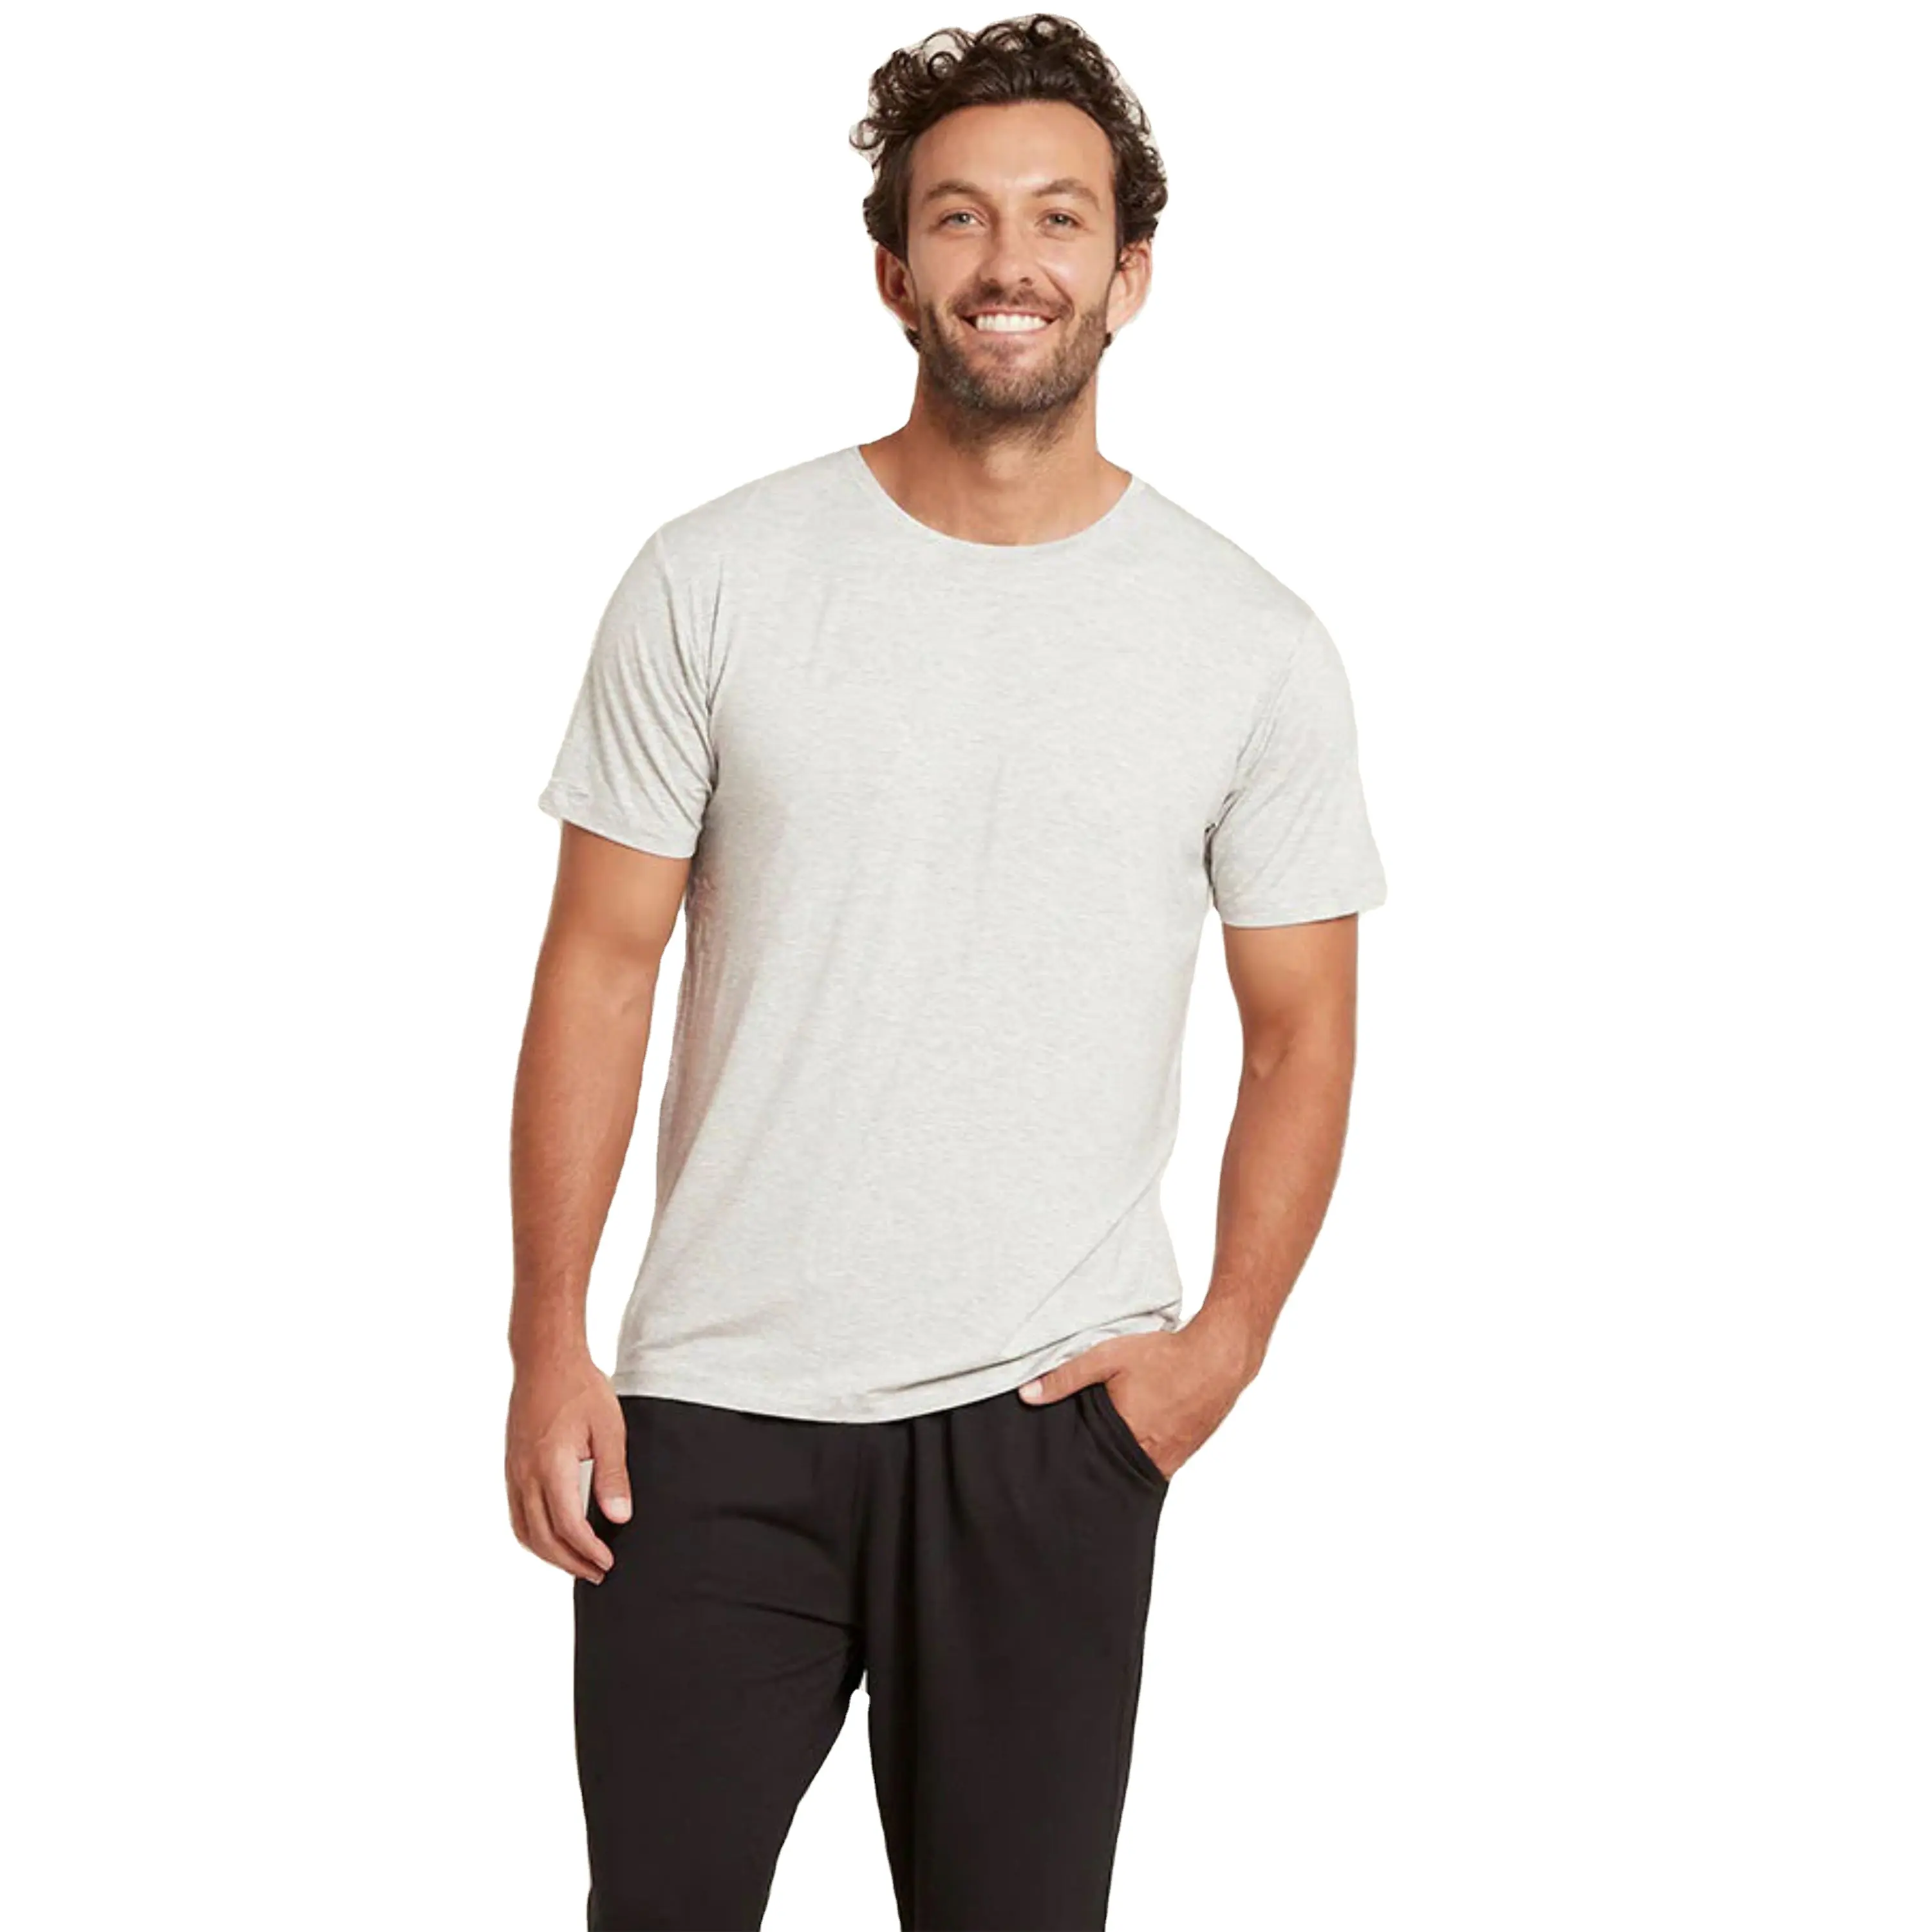 Kaus lengan pendek Crew Neck termal untuk pria, T-Shirt hangat dan nyaman, cocok untuk lapisan cuaca dingin